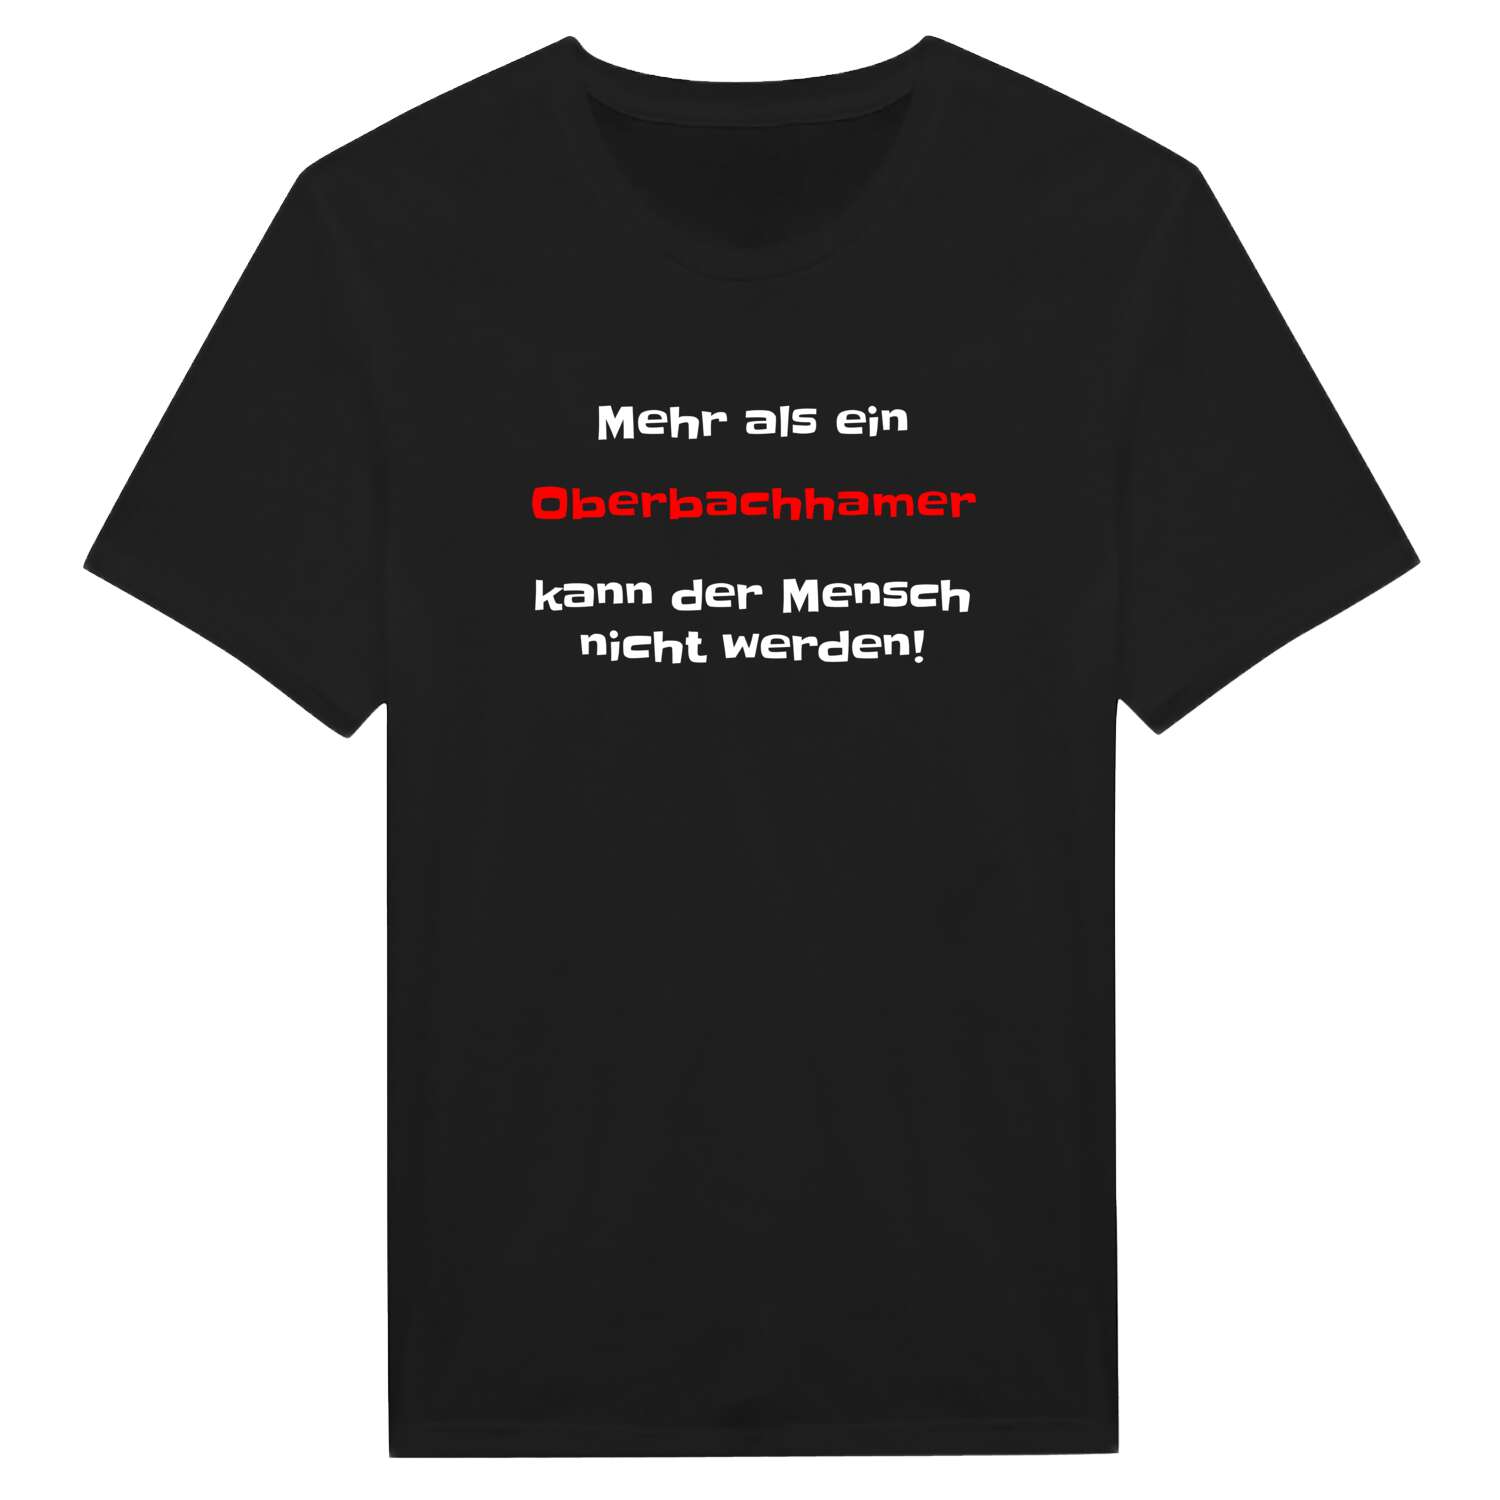 Oberbachham T-Shirt »Mehr als ein«